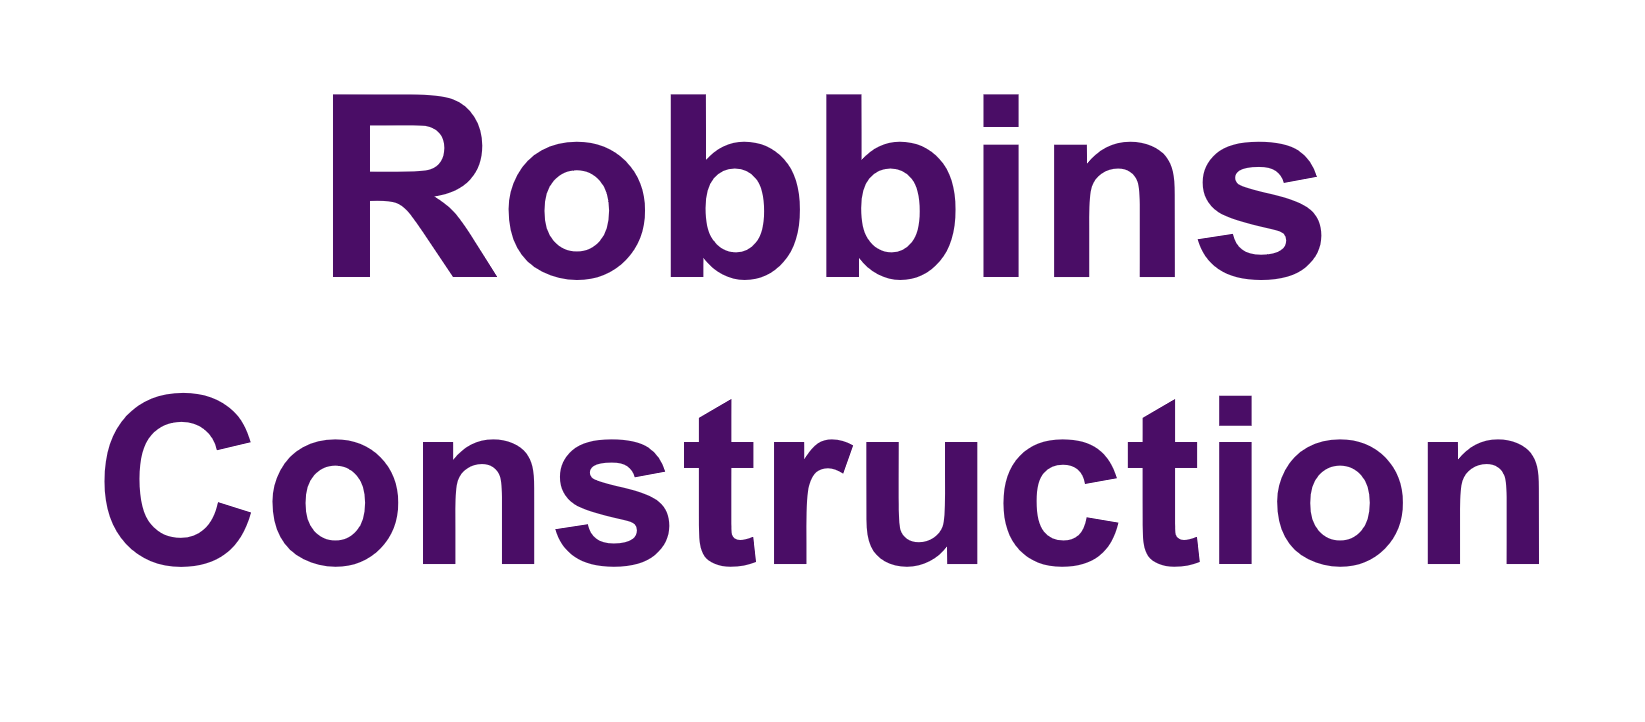 5g. Robbins Construction (Partner)